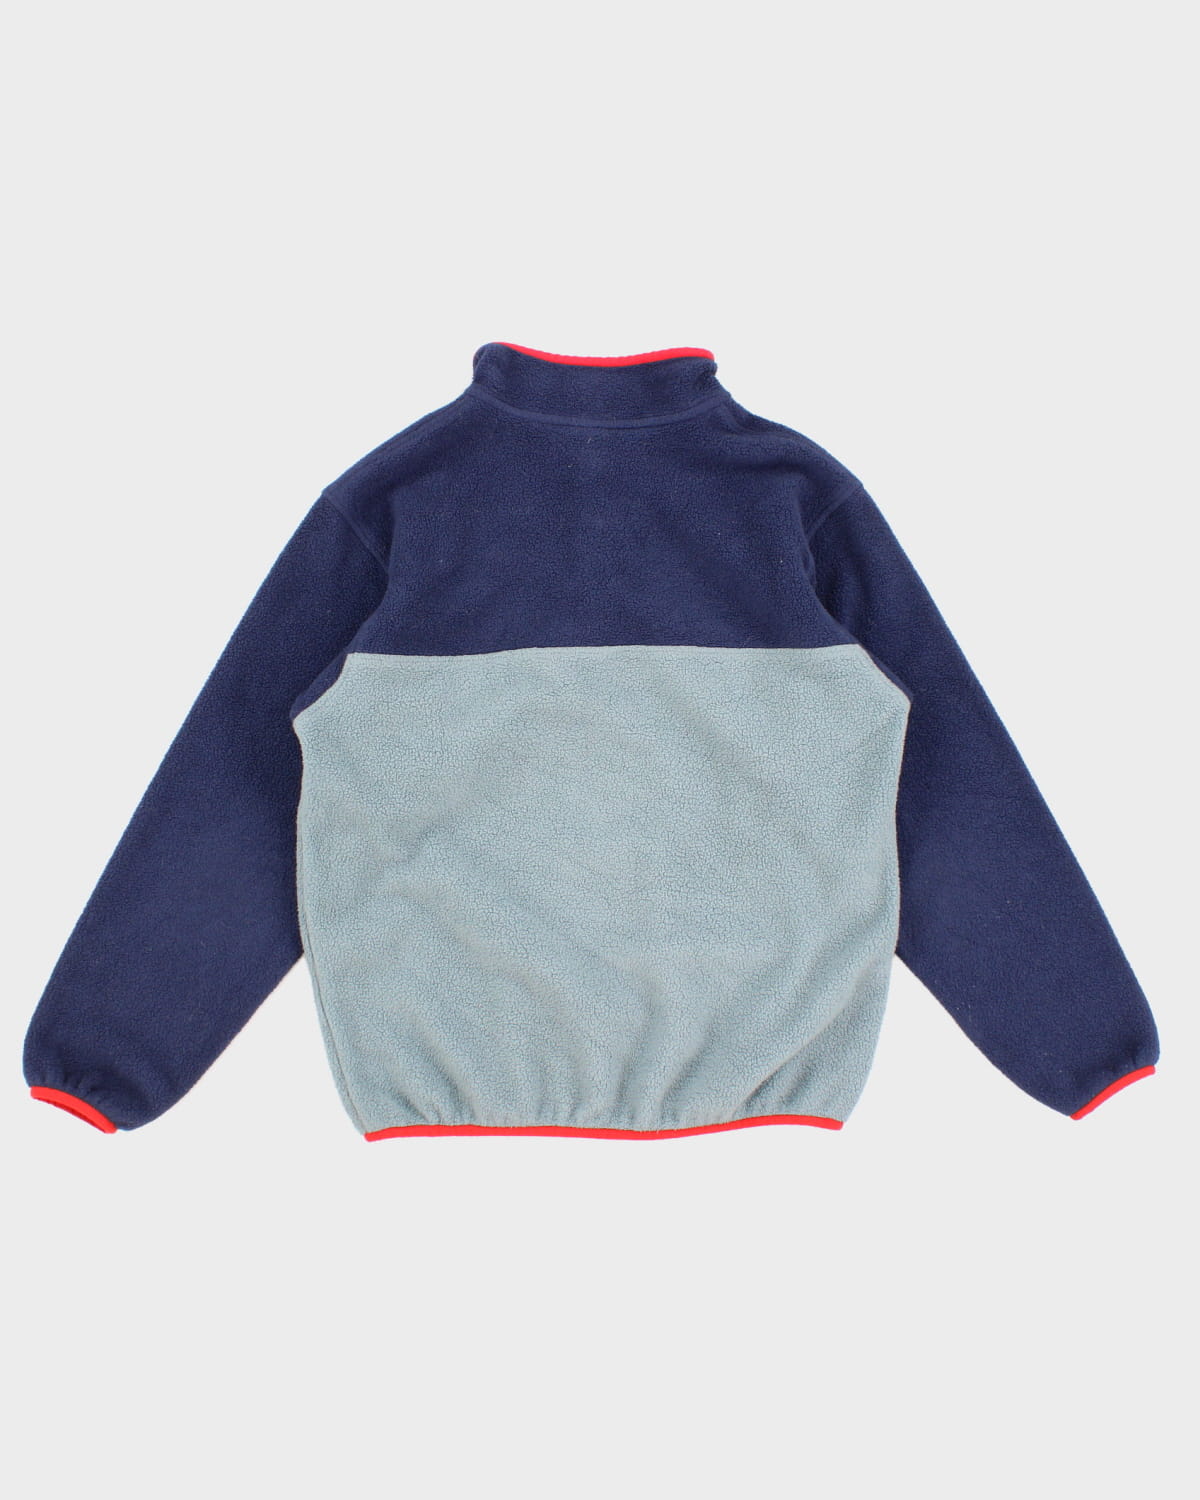 Patagonia Children's Fleece Sweatshirt - L